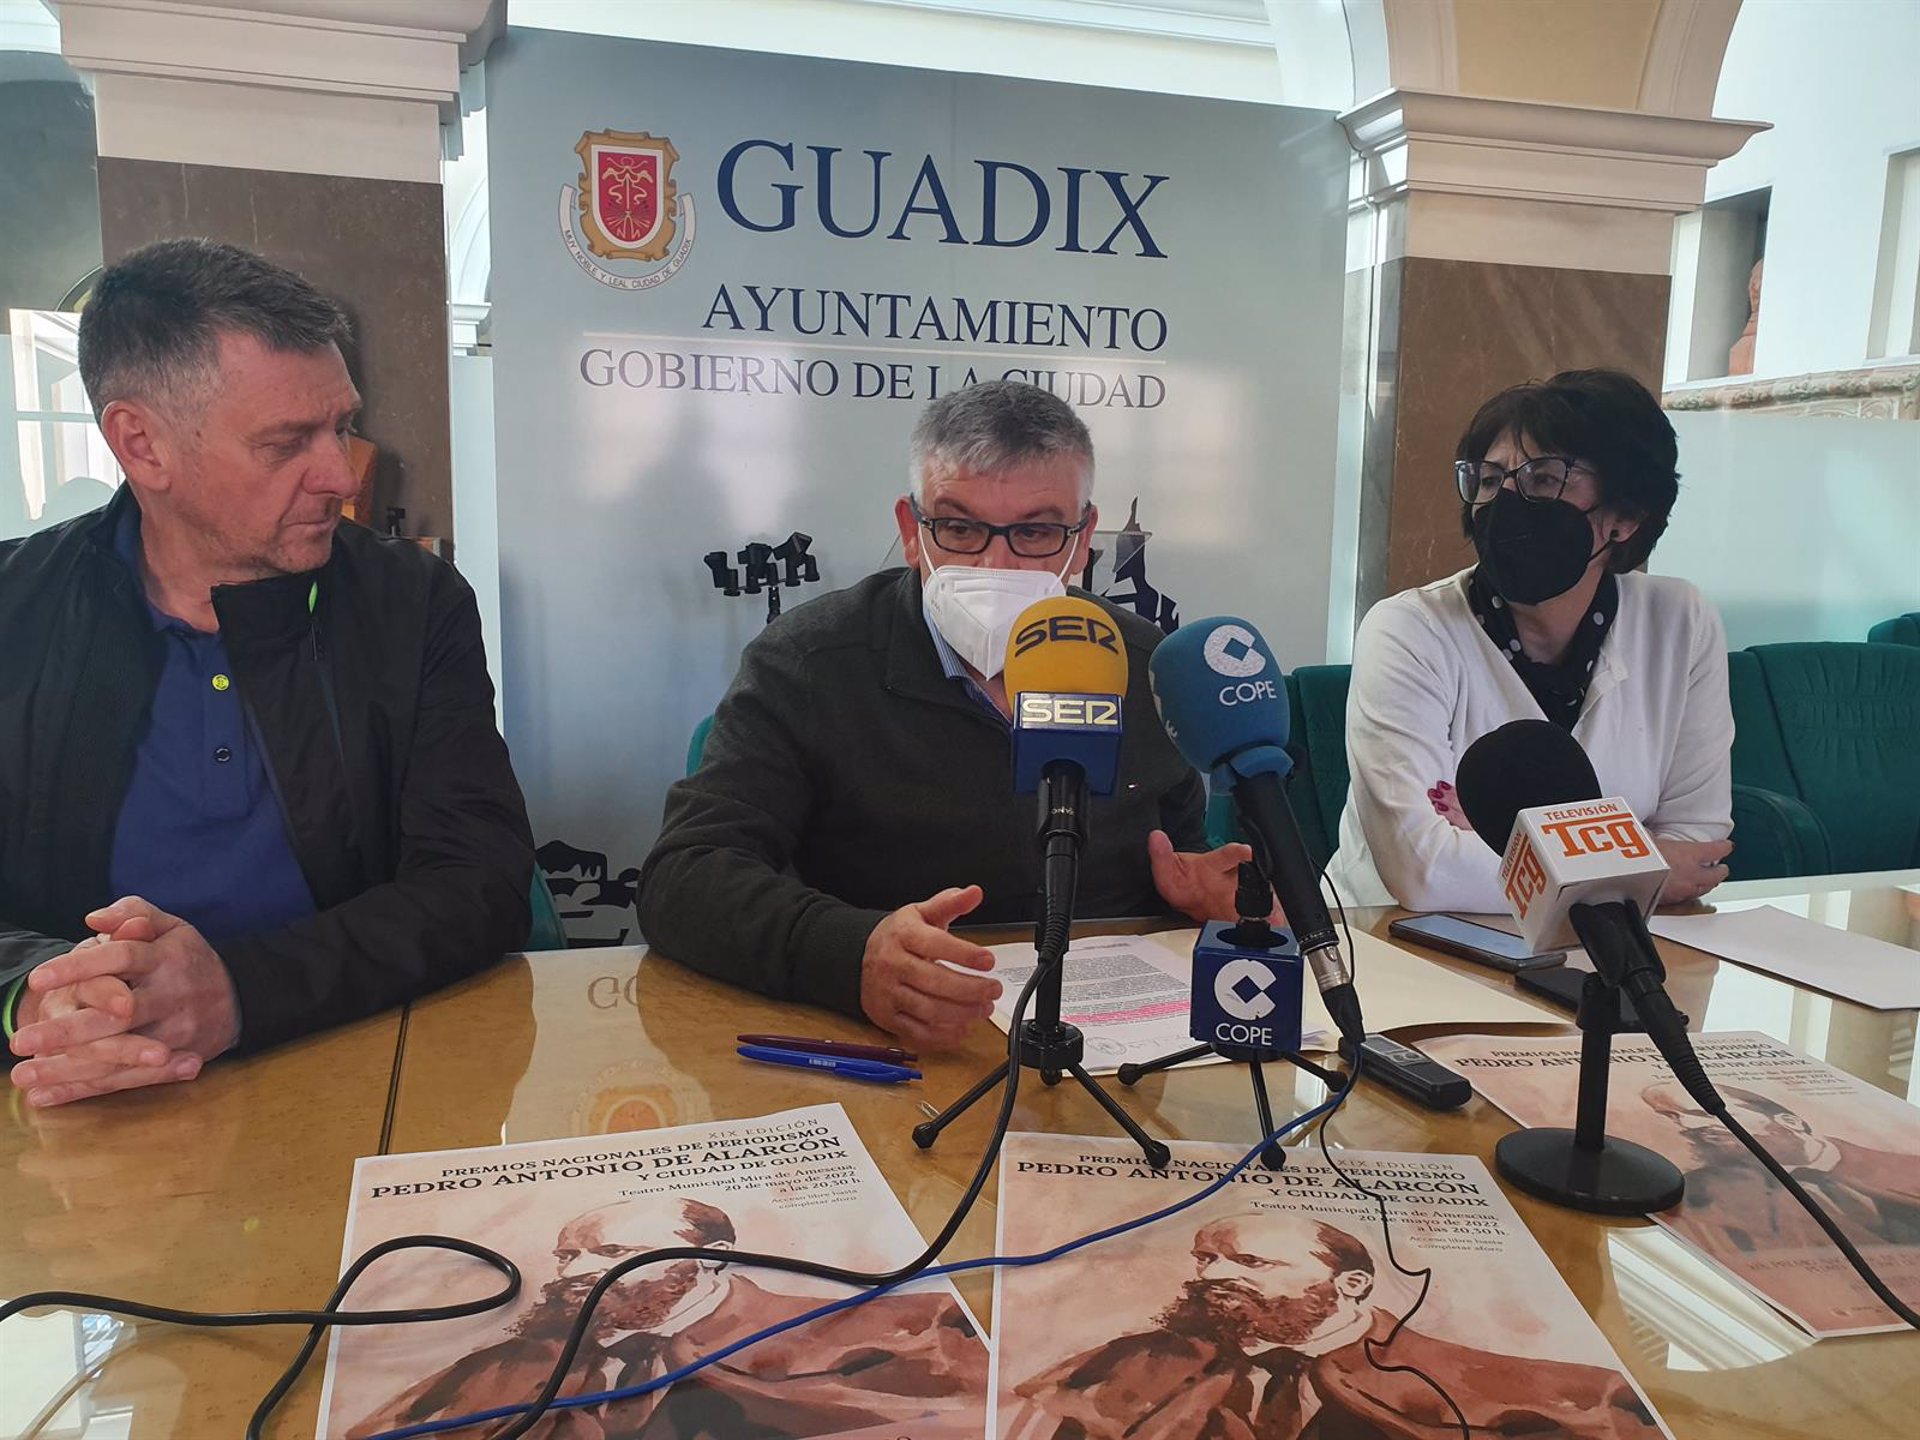 Los Premios de Periodismo de Guadix reconocen la trayectoria profesional de Pepa Bueno